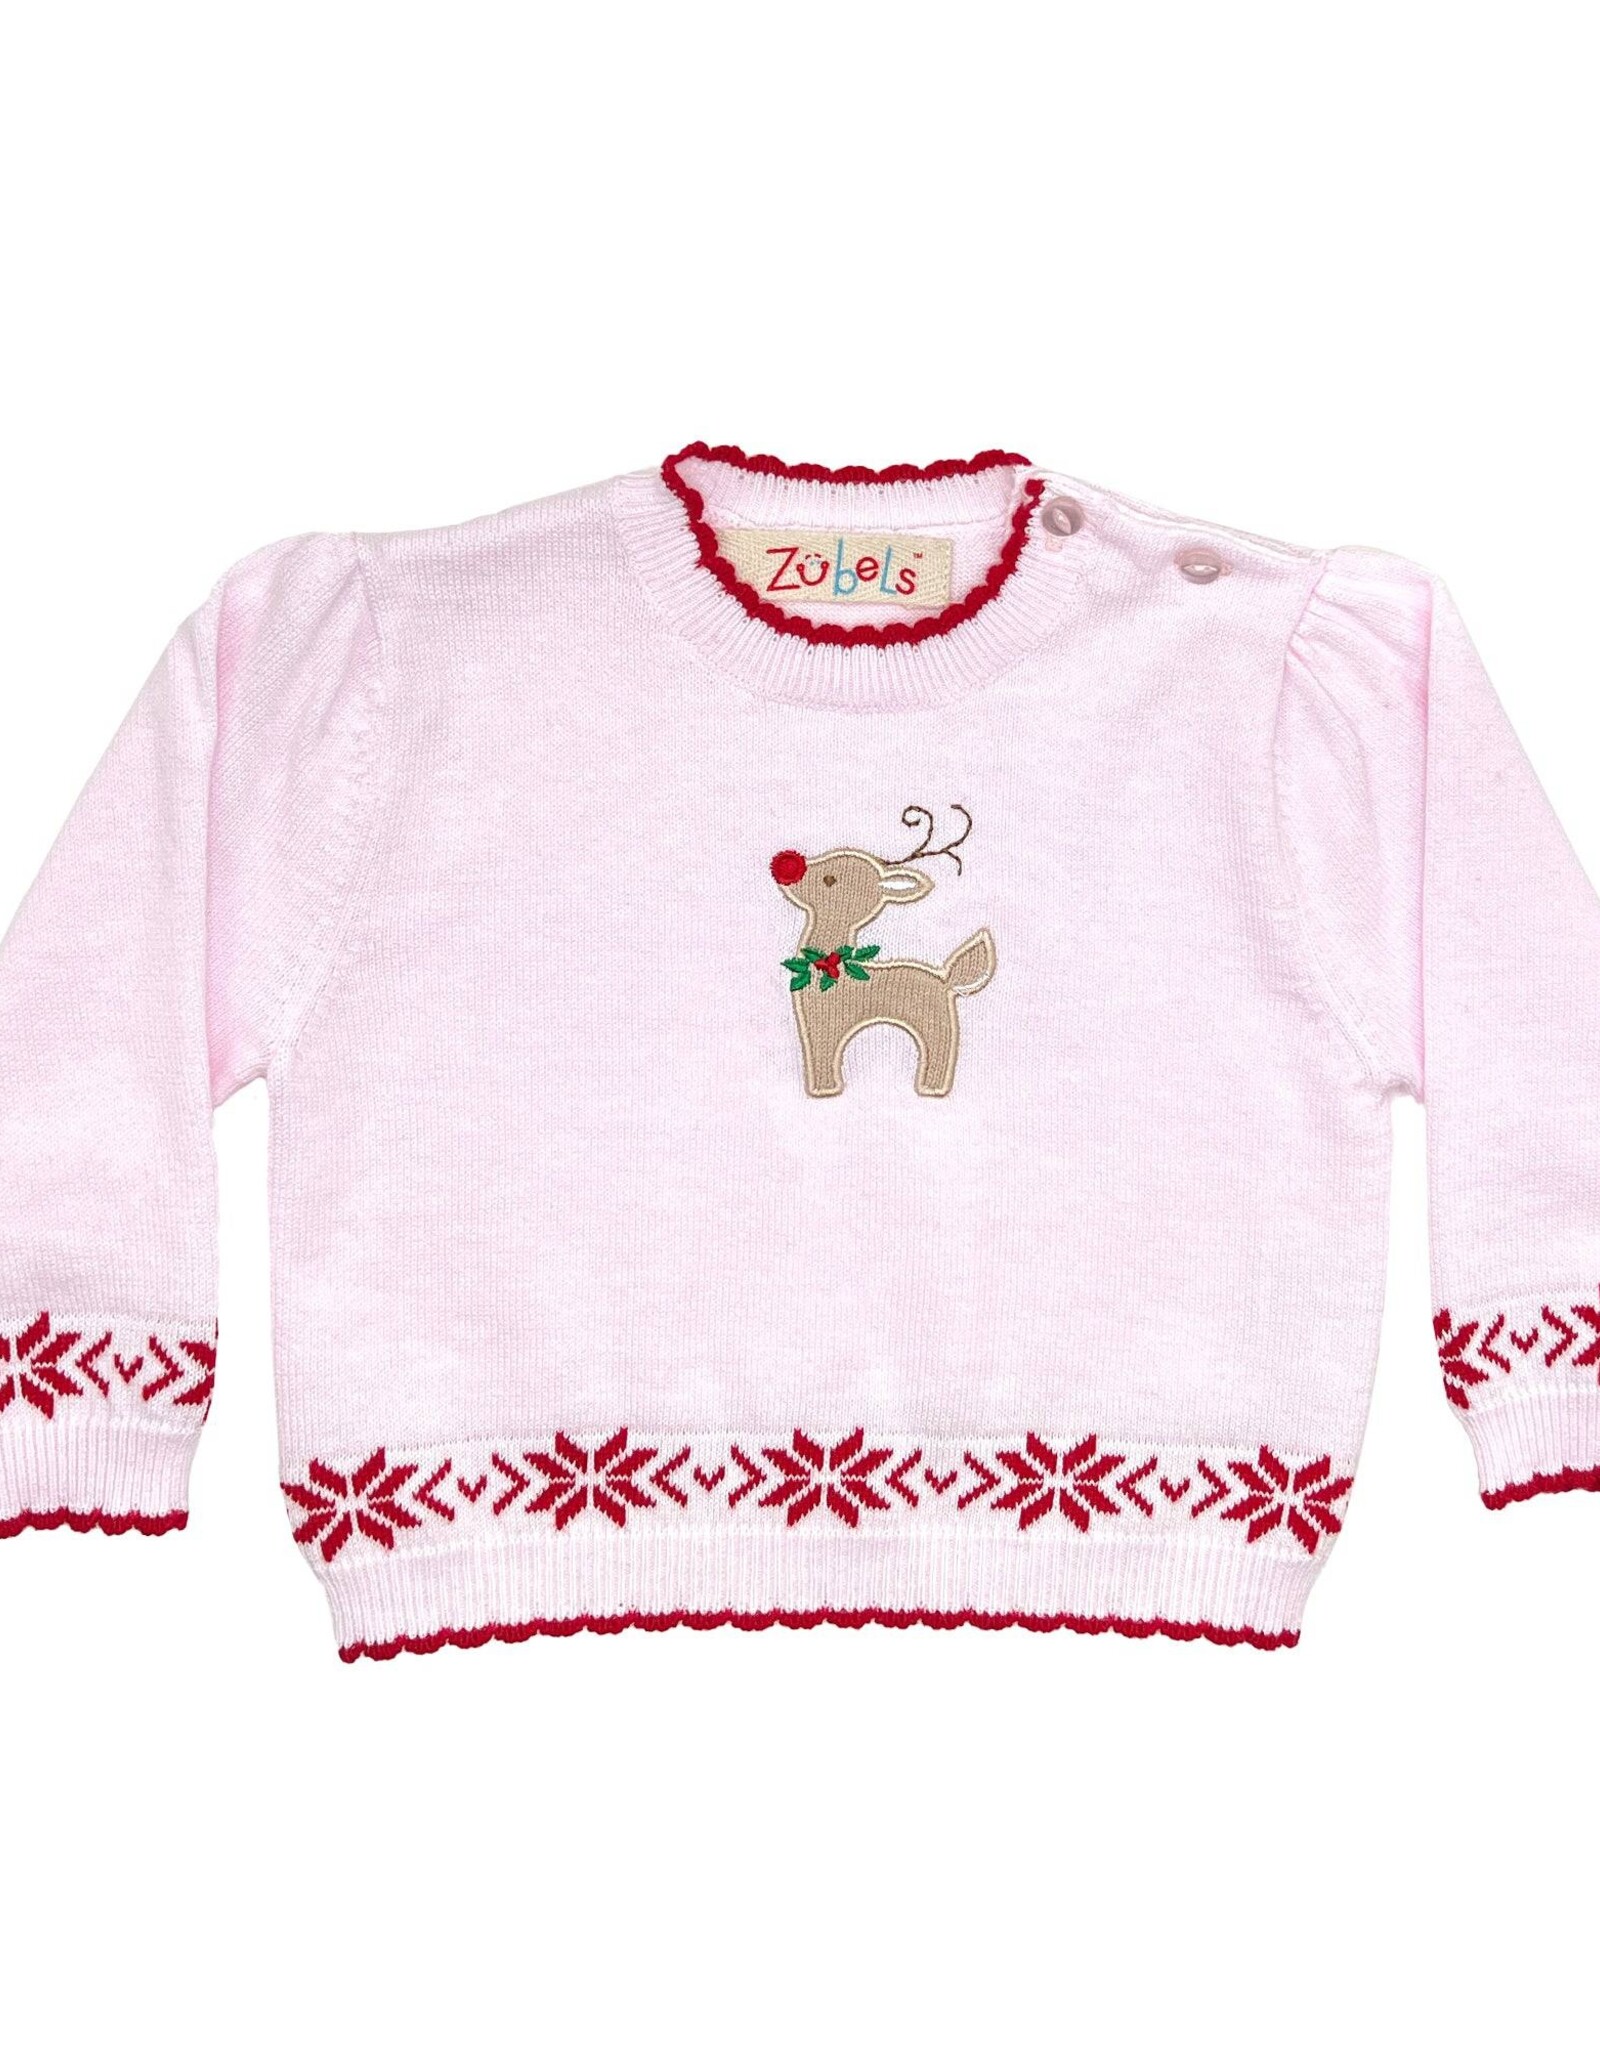 Zubels Reindeer Sweater Pink